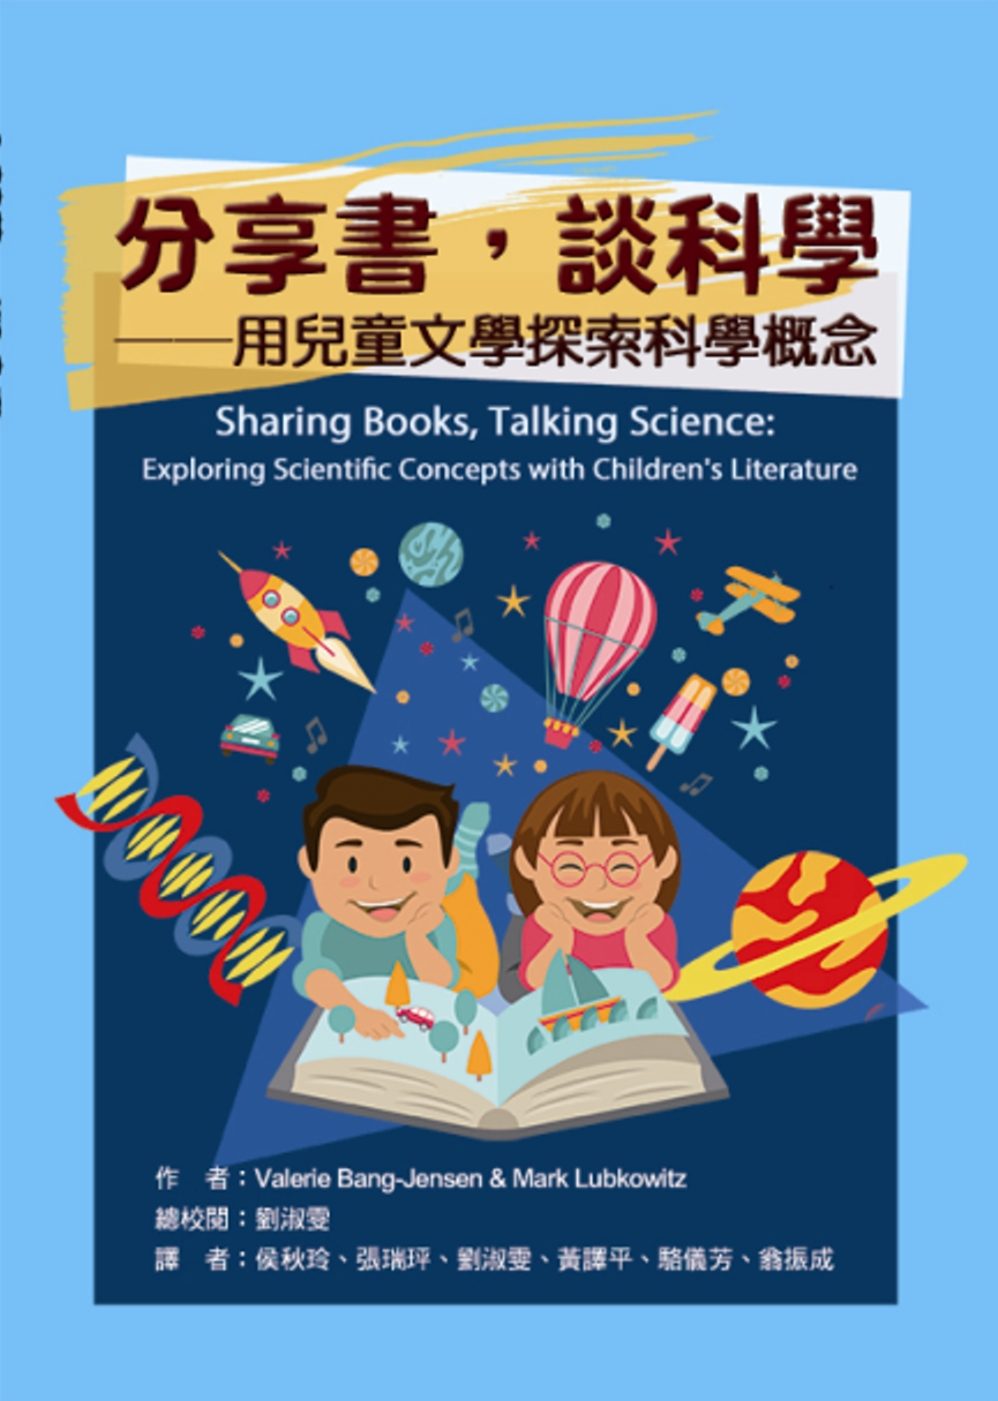 分享書，談科學：用兒童文學探索科學概念